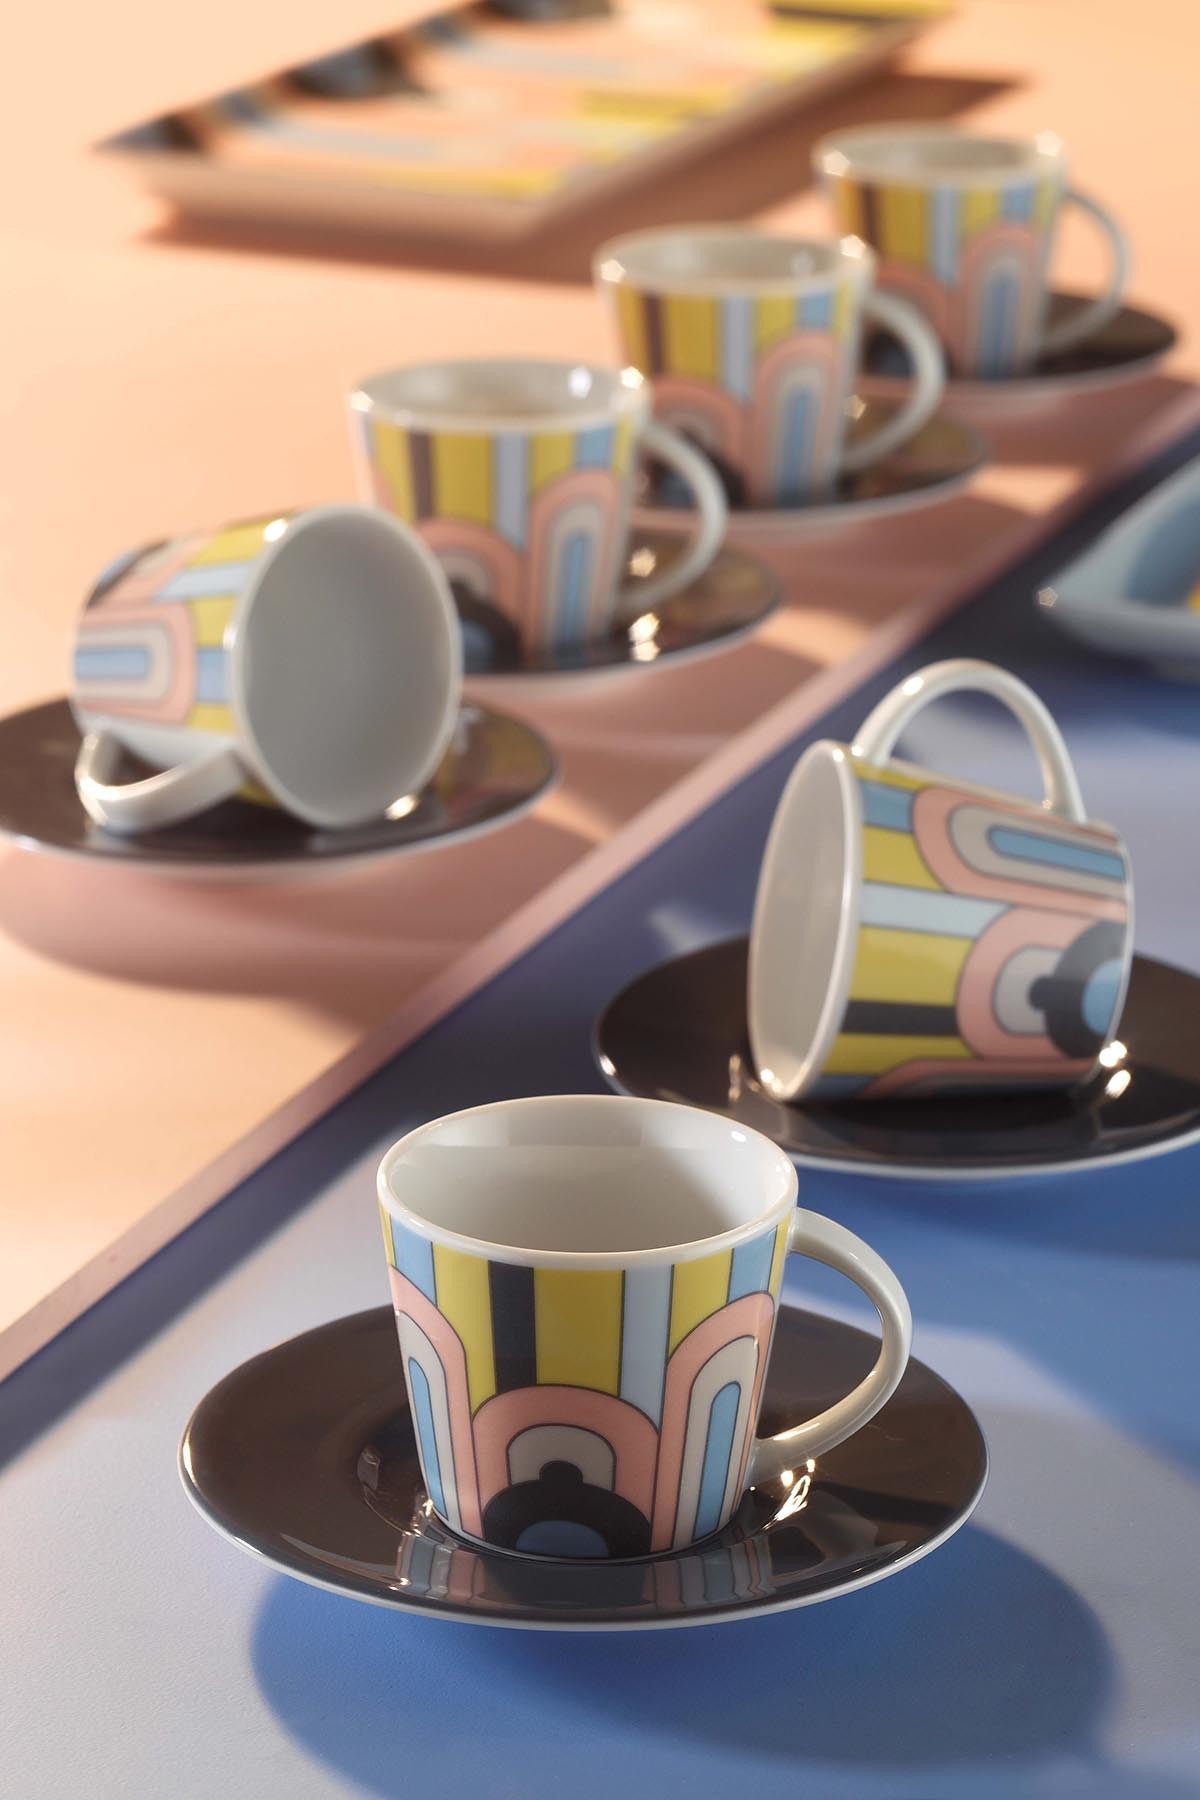 Set cești de cafea, Multicolor, 6x5x6 cm